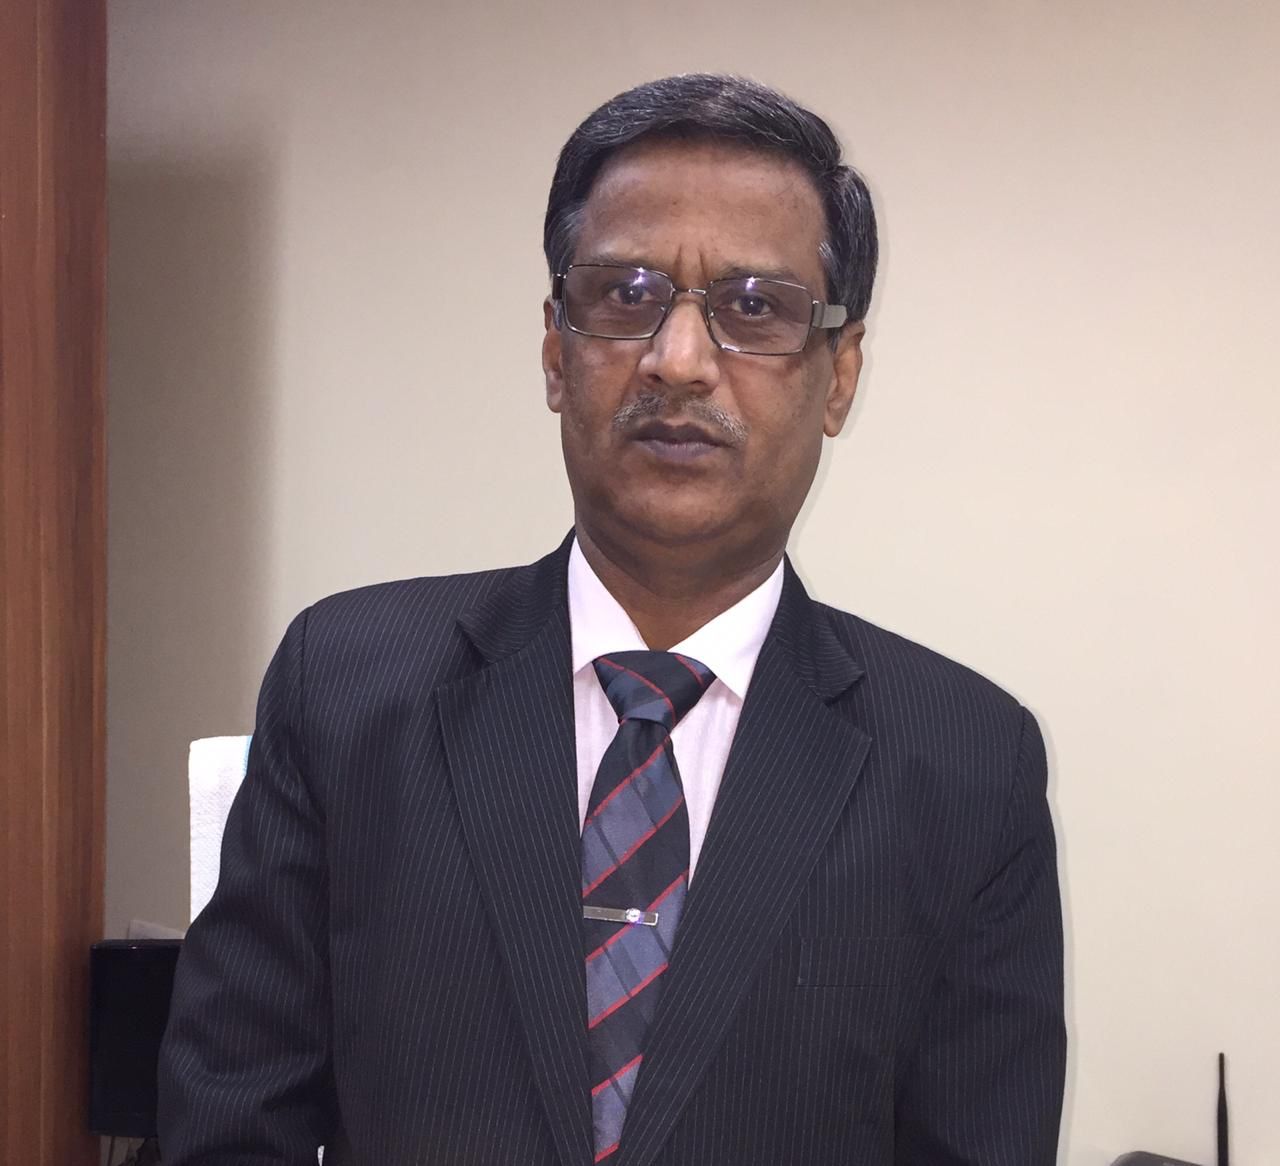 Dr Manoj Kumar